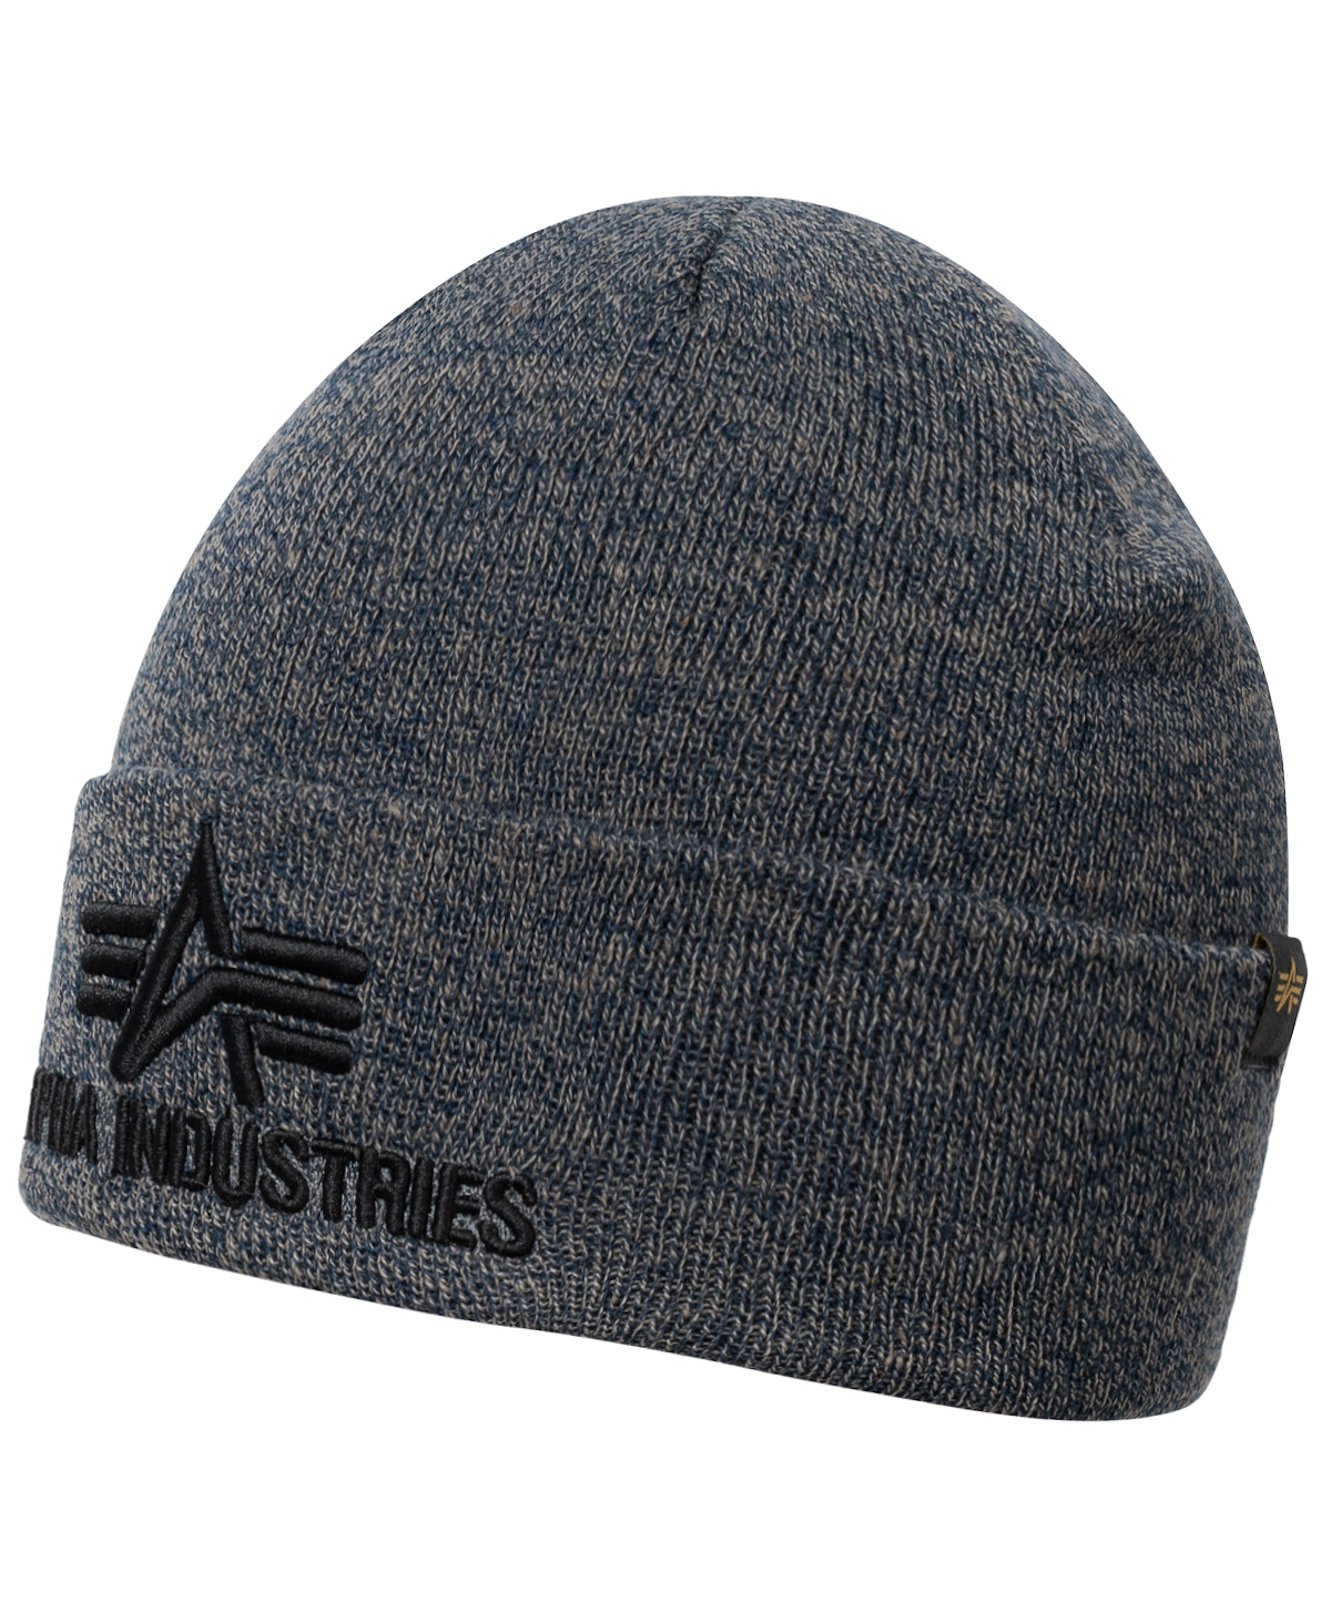 Alpha Industries gorra sombrero invierno 3d punto Beanie invierno unisex 168910